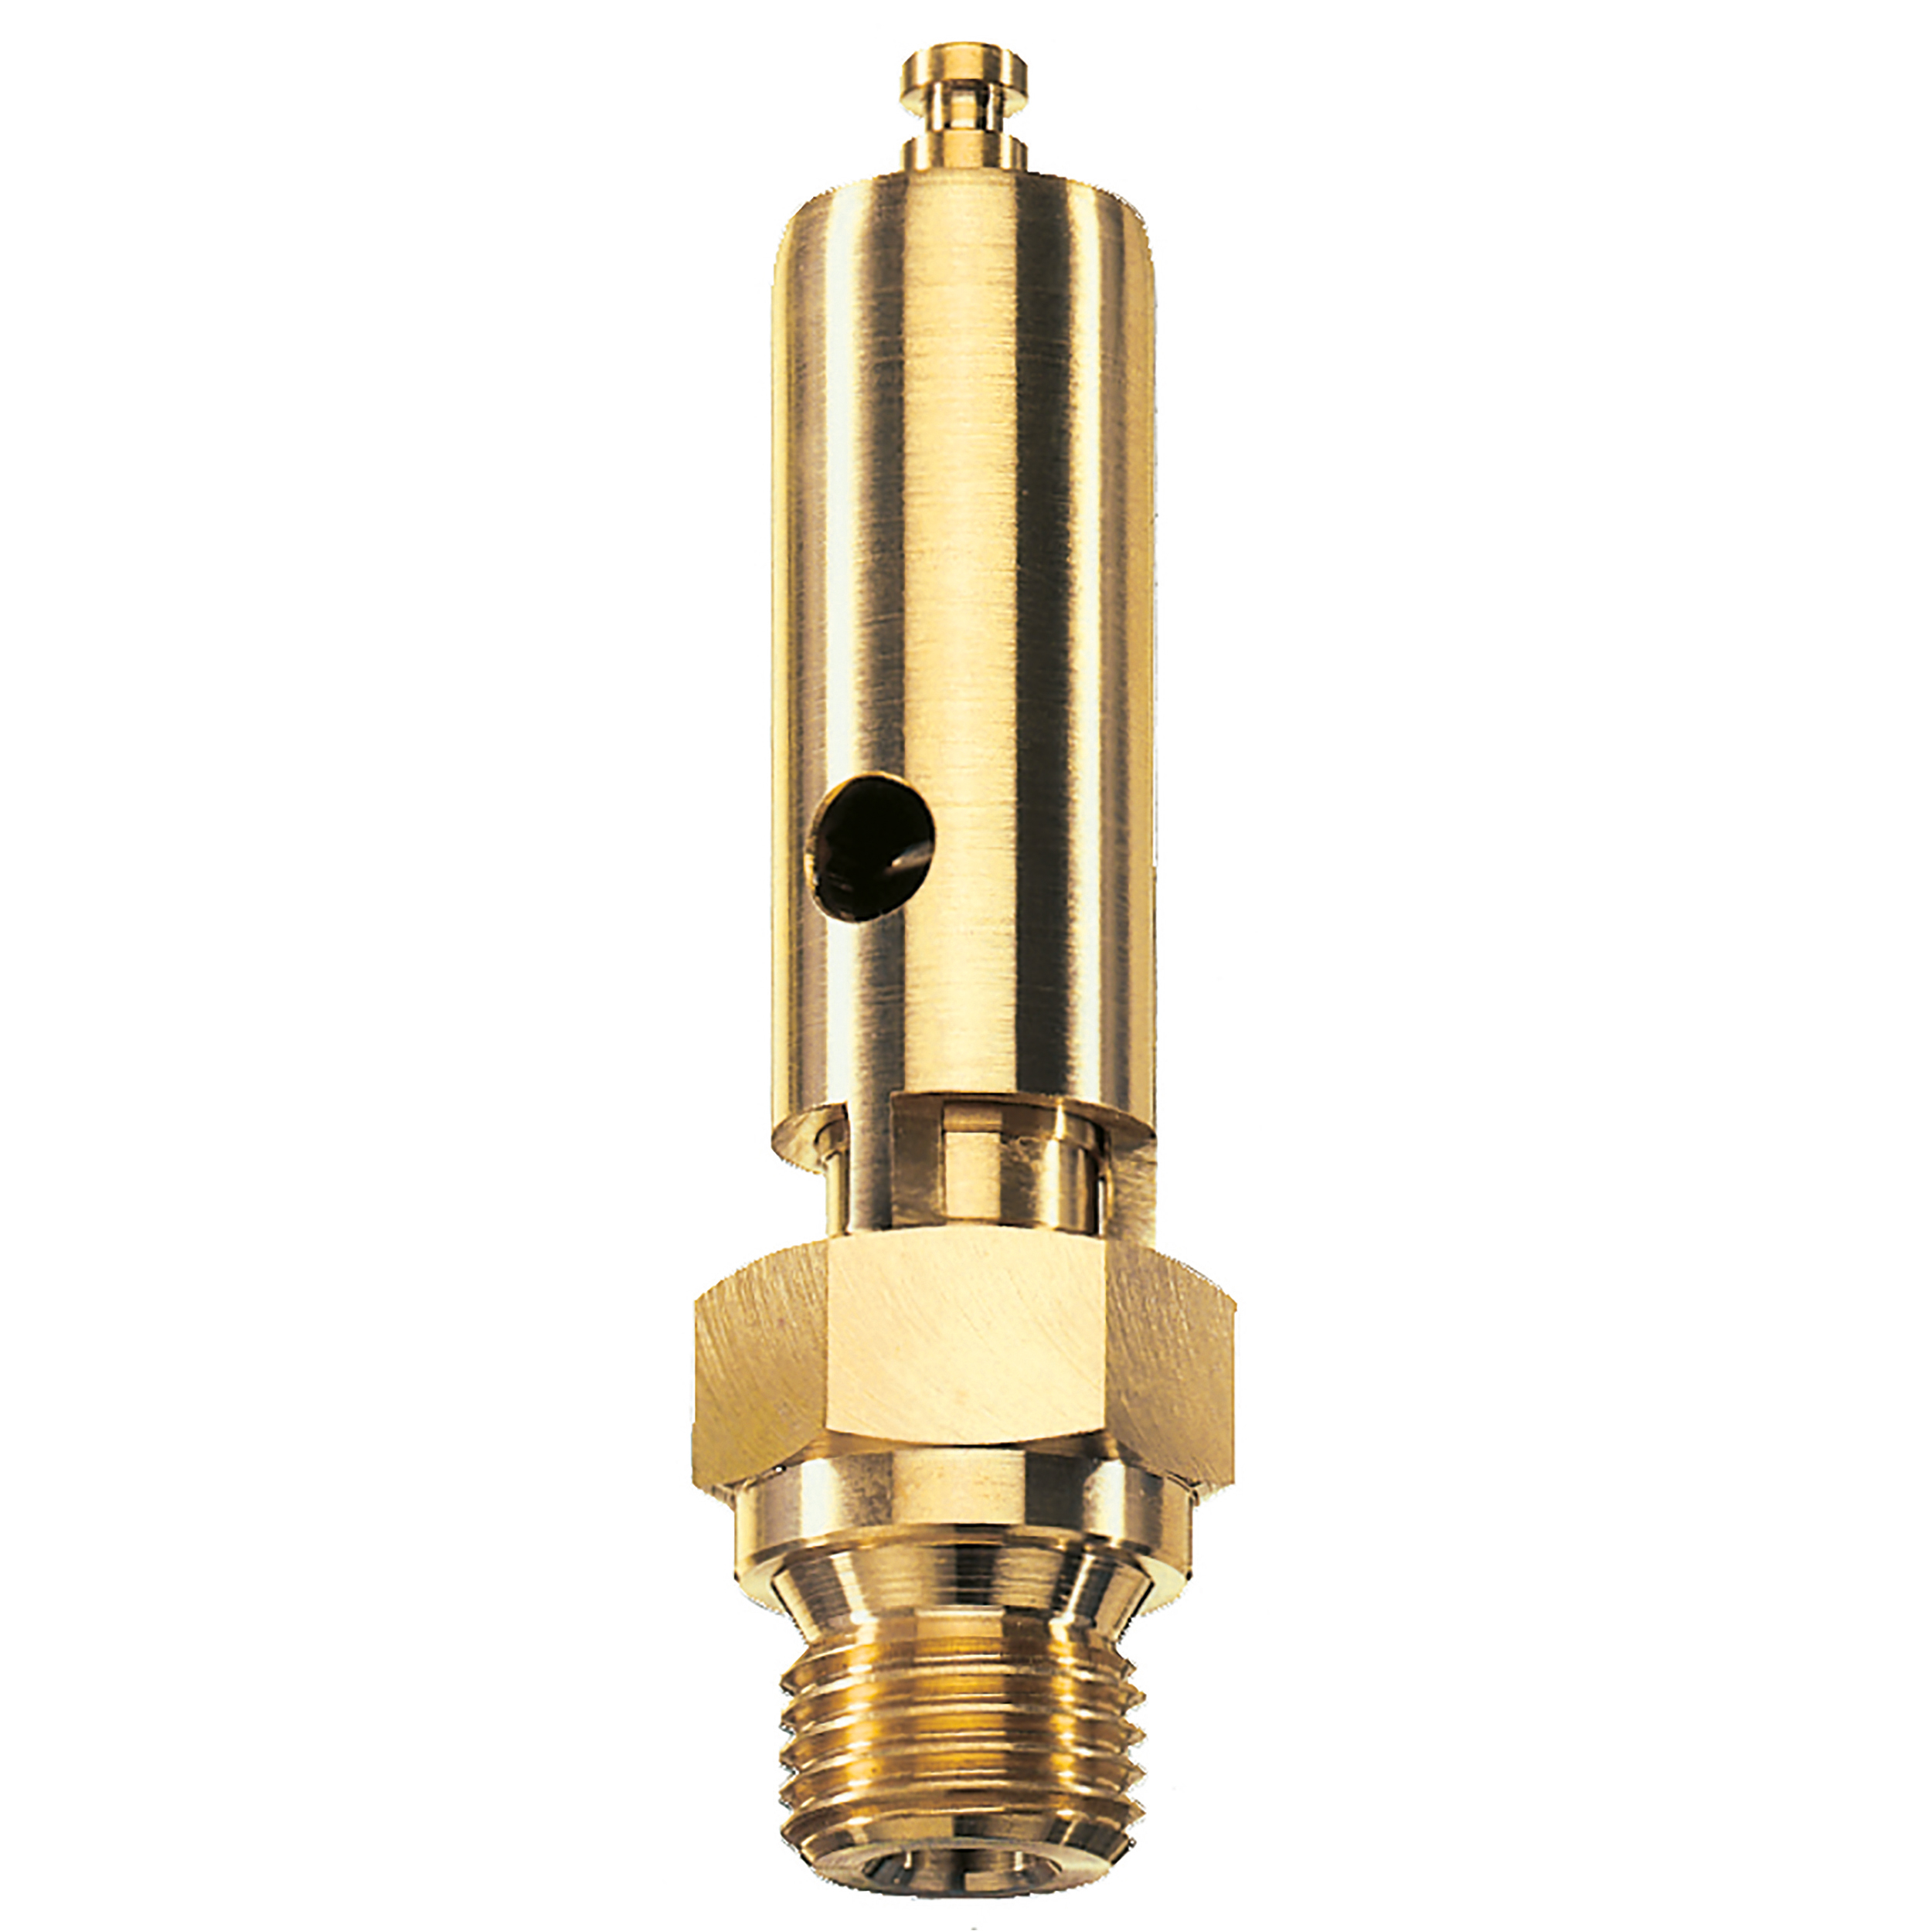 Savety valve component tested DN 6, G⅜, L: 60 mm, seal: FKM, set pressure: 19.1 bar (277,0 psi), TÜV approval